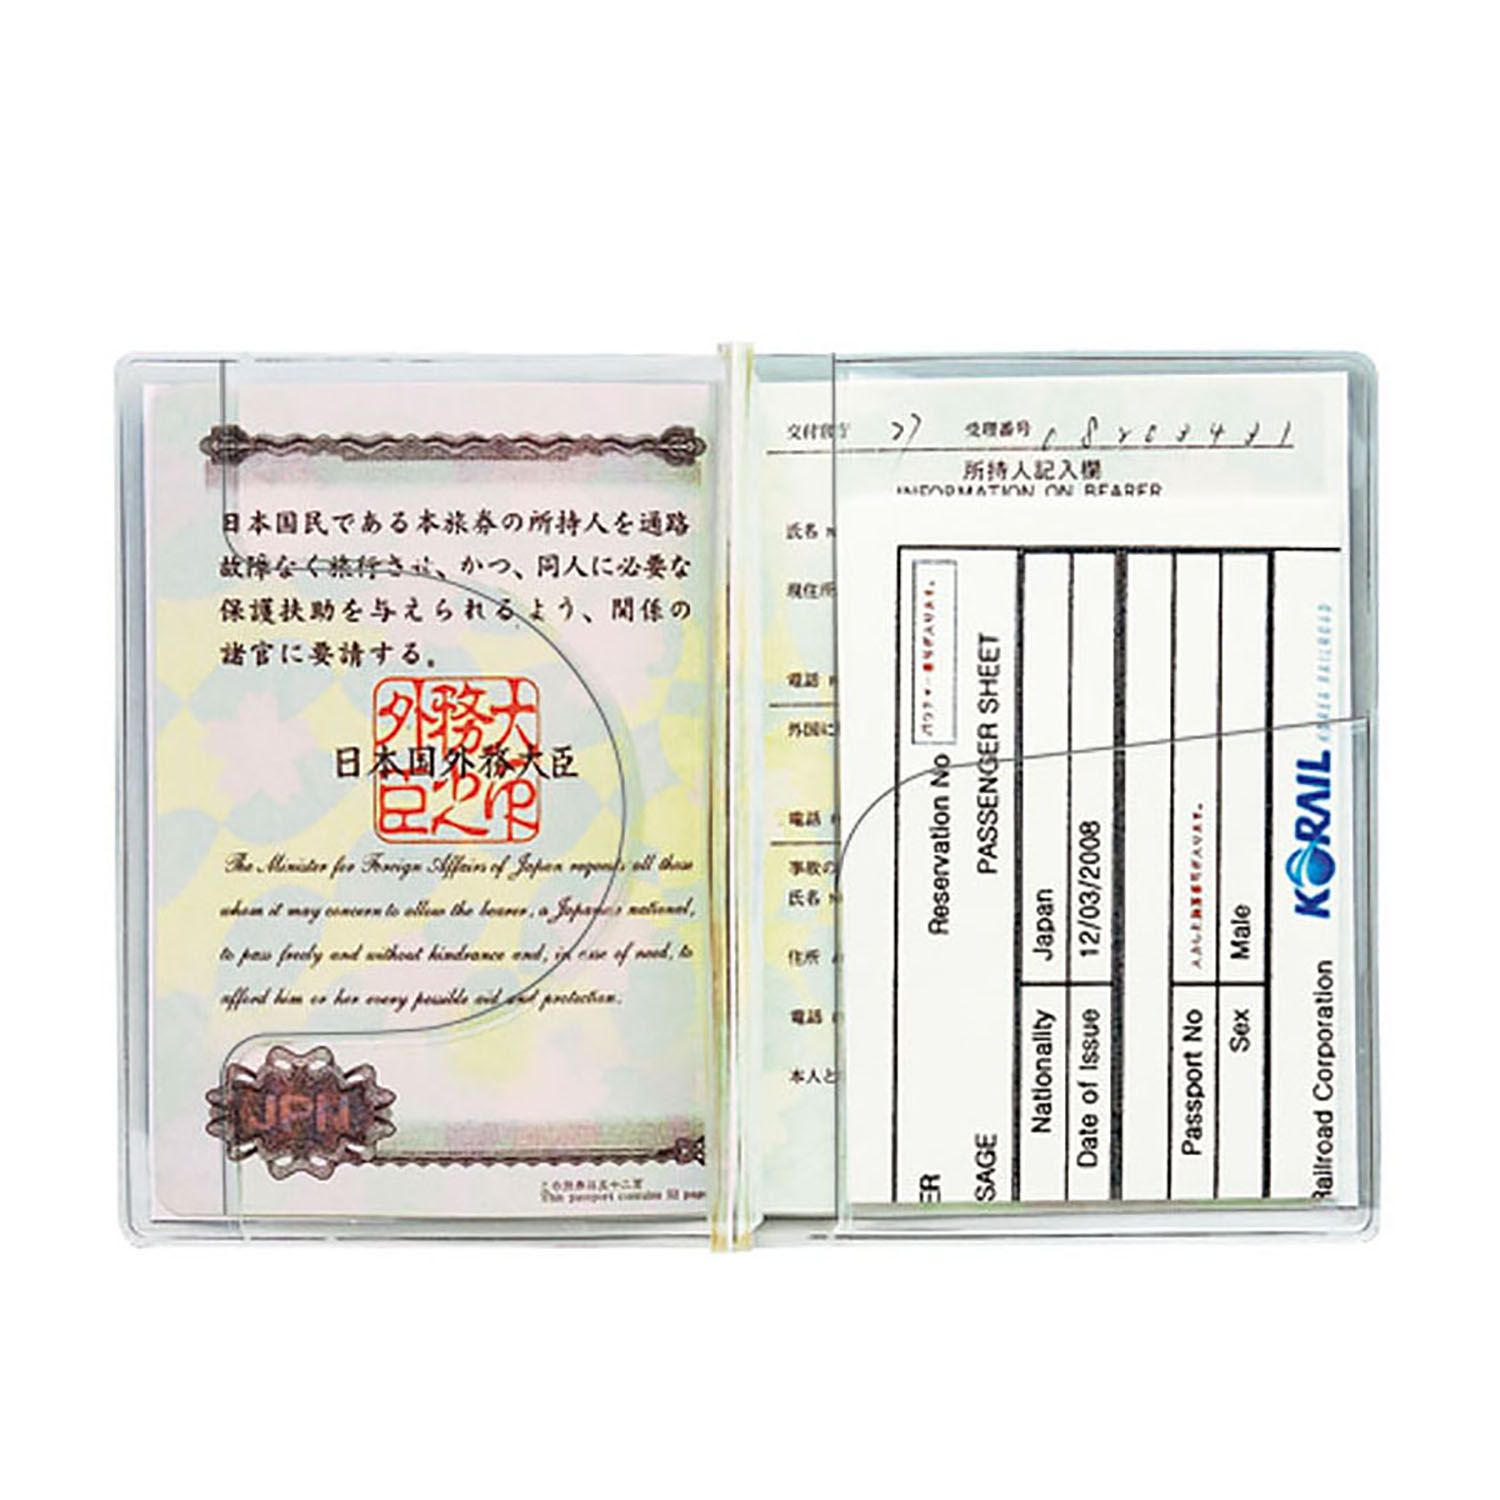 クリアーカバー(パスポートサイズ) – クツワ株式会社 -KUTSUWA-